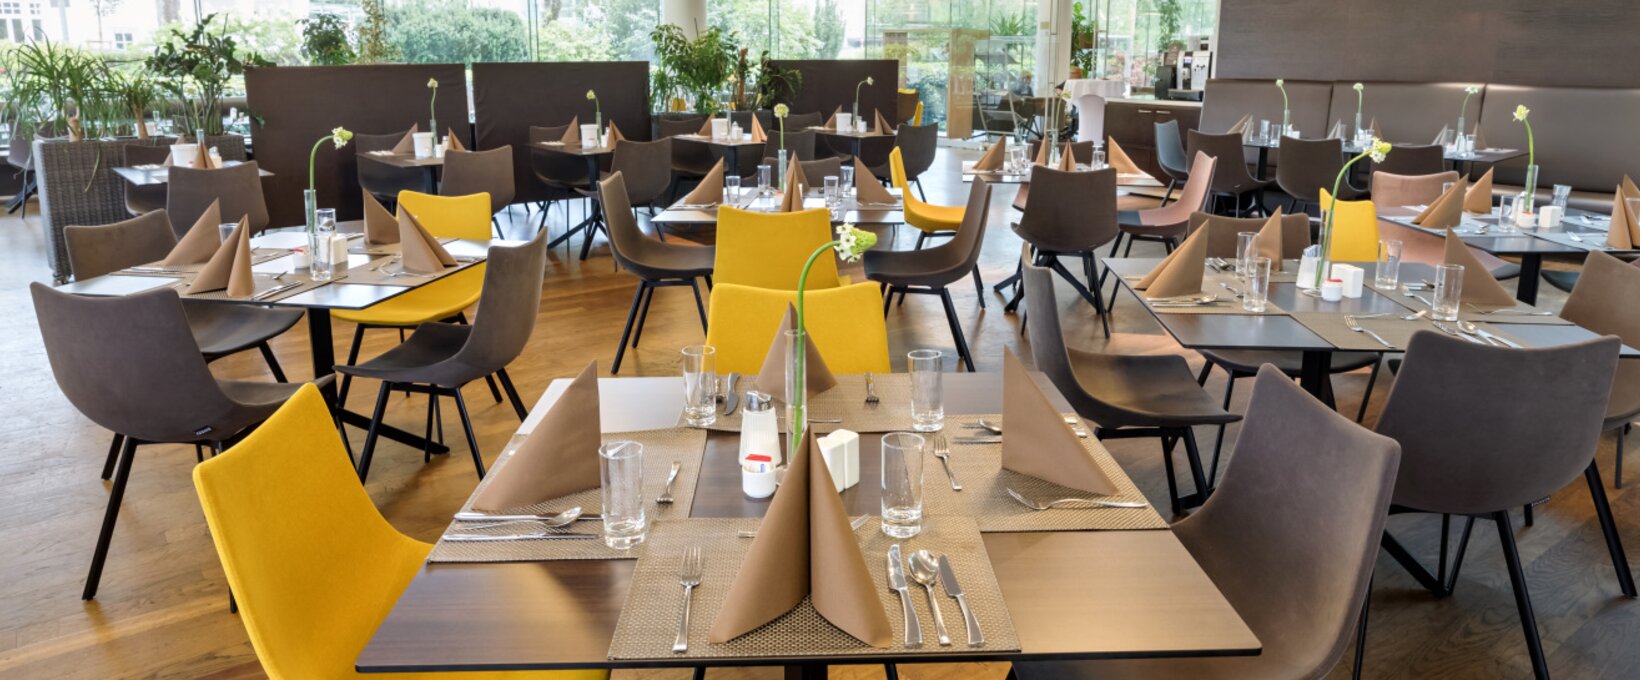 Restaurant mit eingedecktem Tisch | Hotel Congress Innsbruck